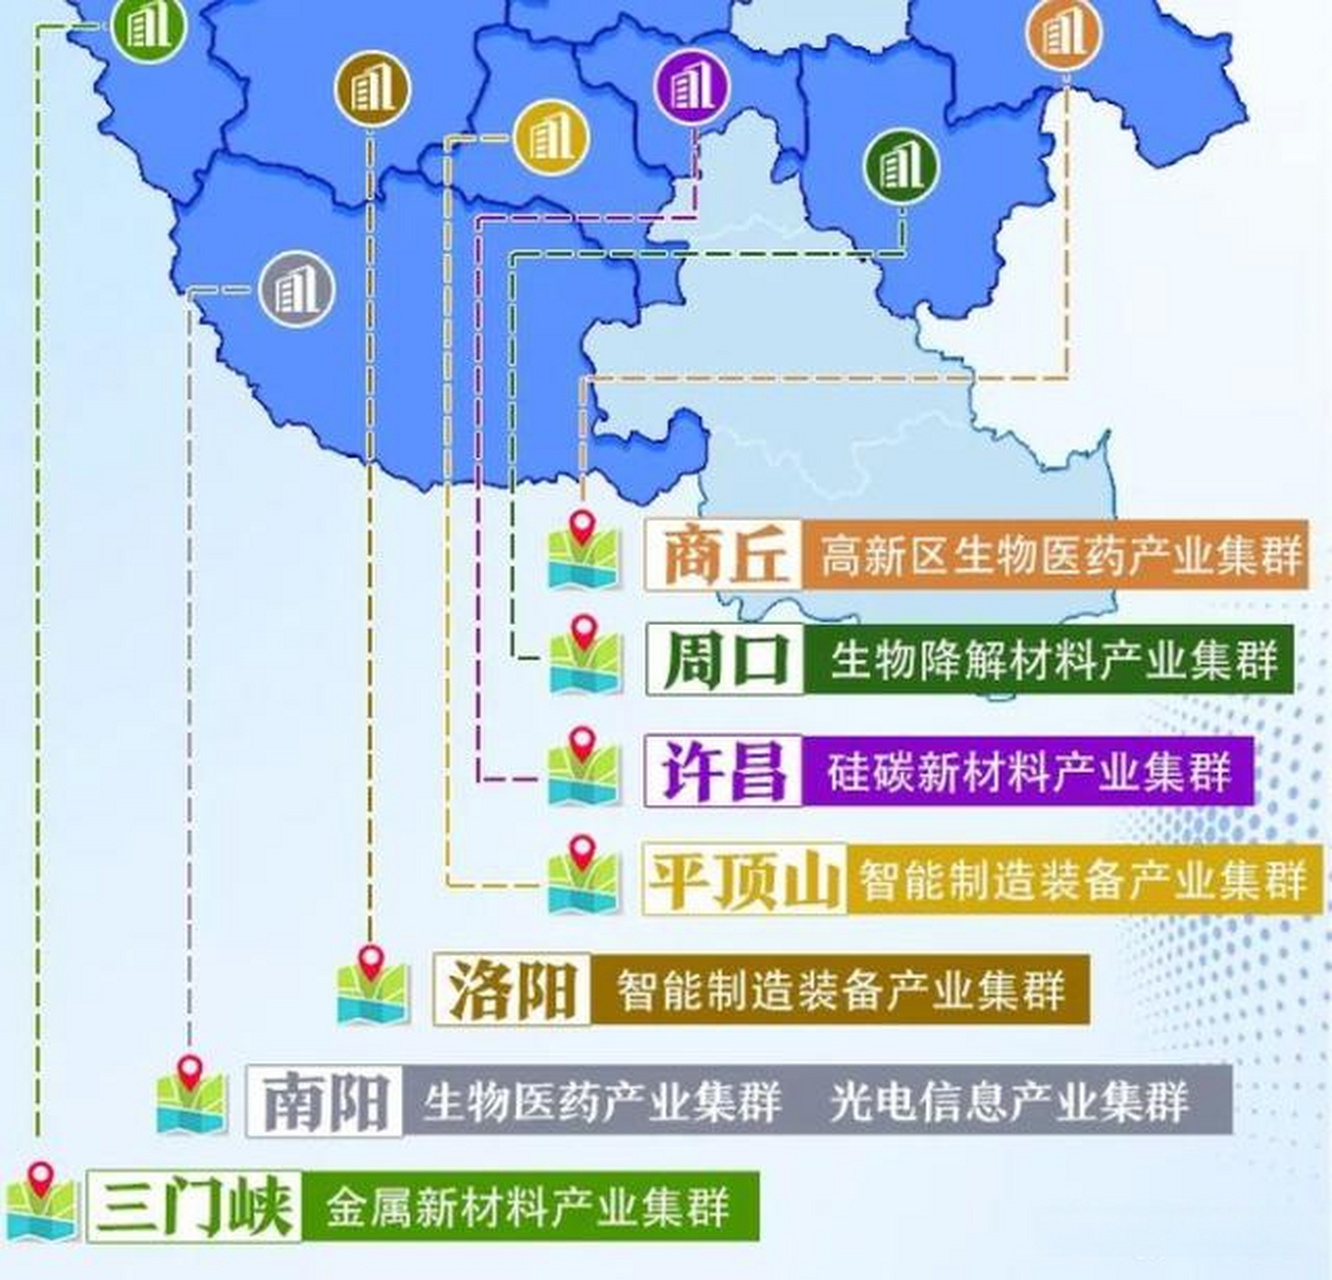 河南:公布首批战略性新兴产业集群 